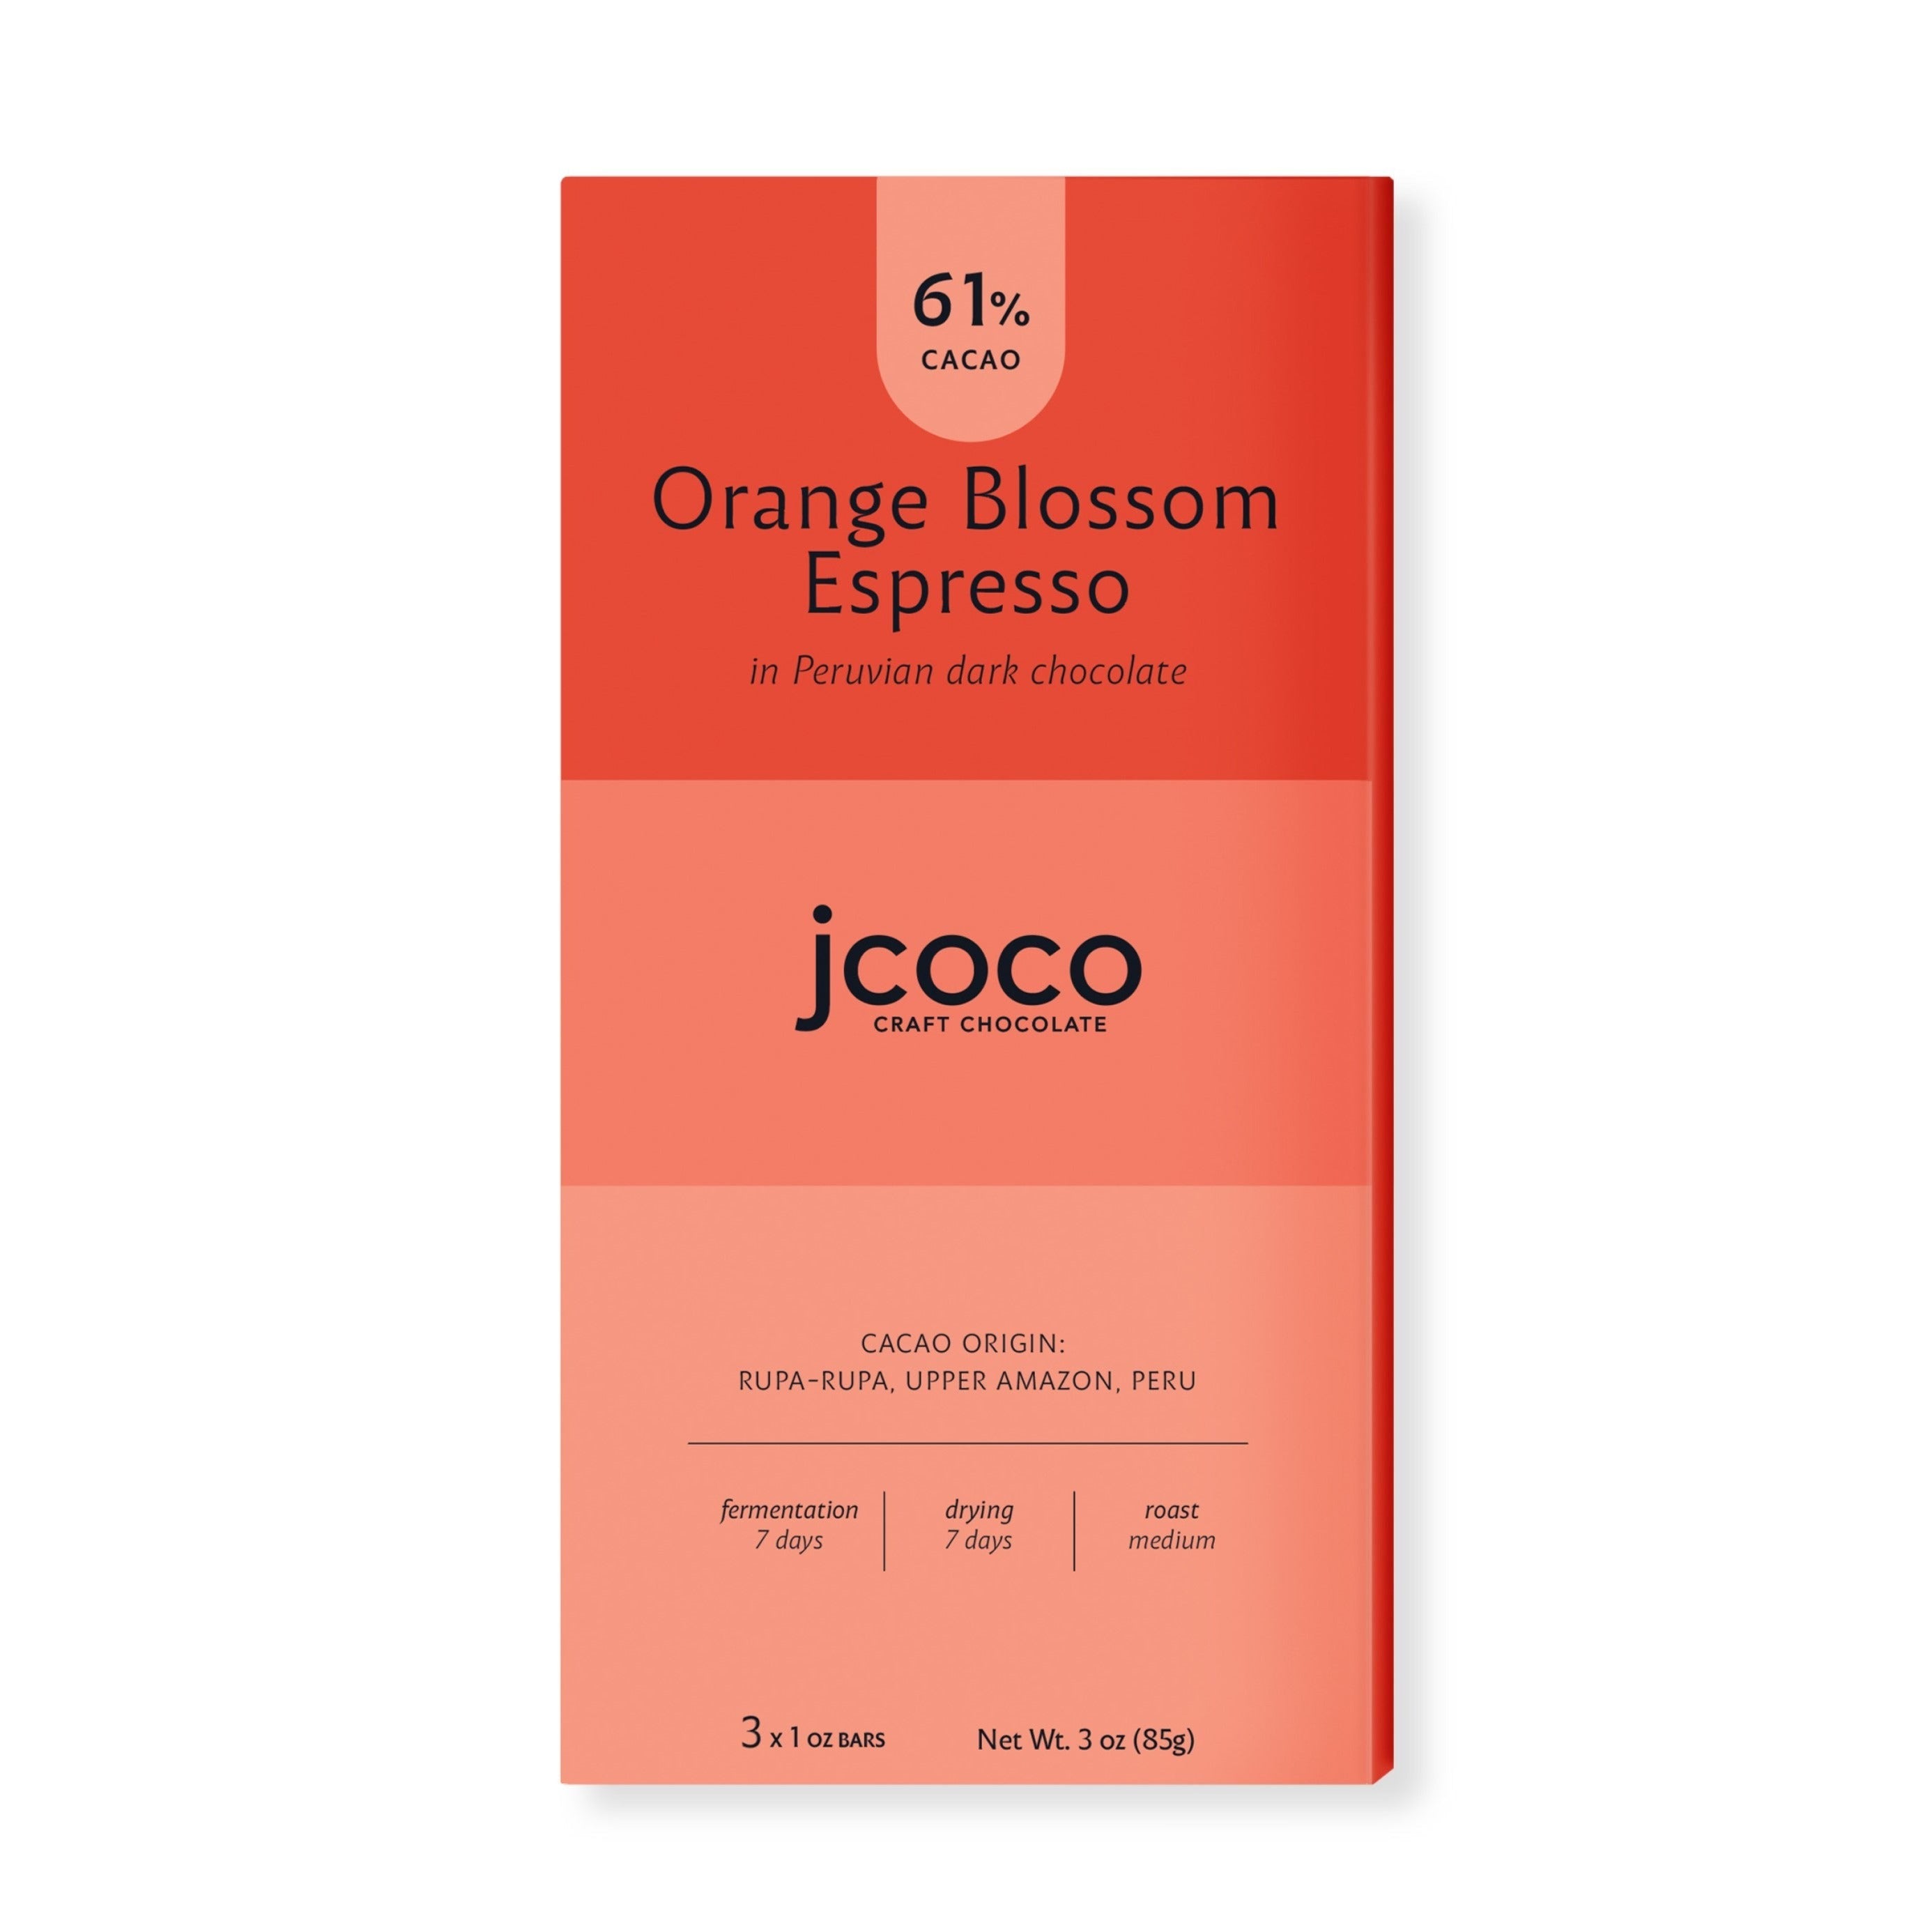 Orange Blossom Espresso